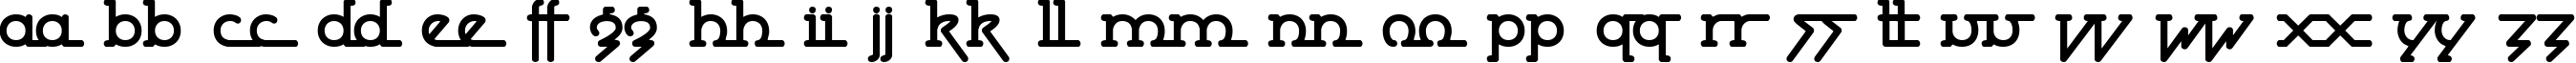 Пример написания английского алфавита шрифтом Powderworks BRK